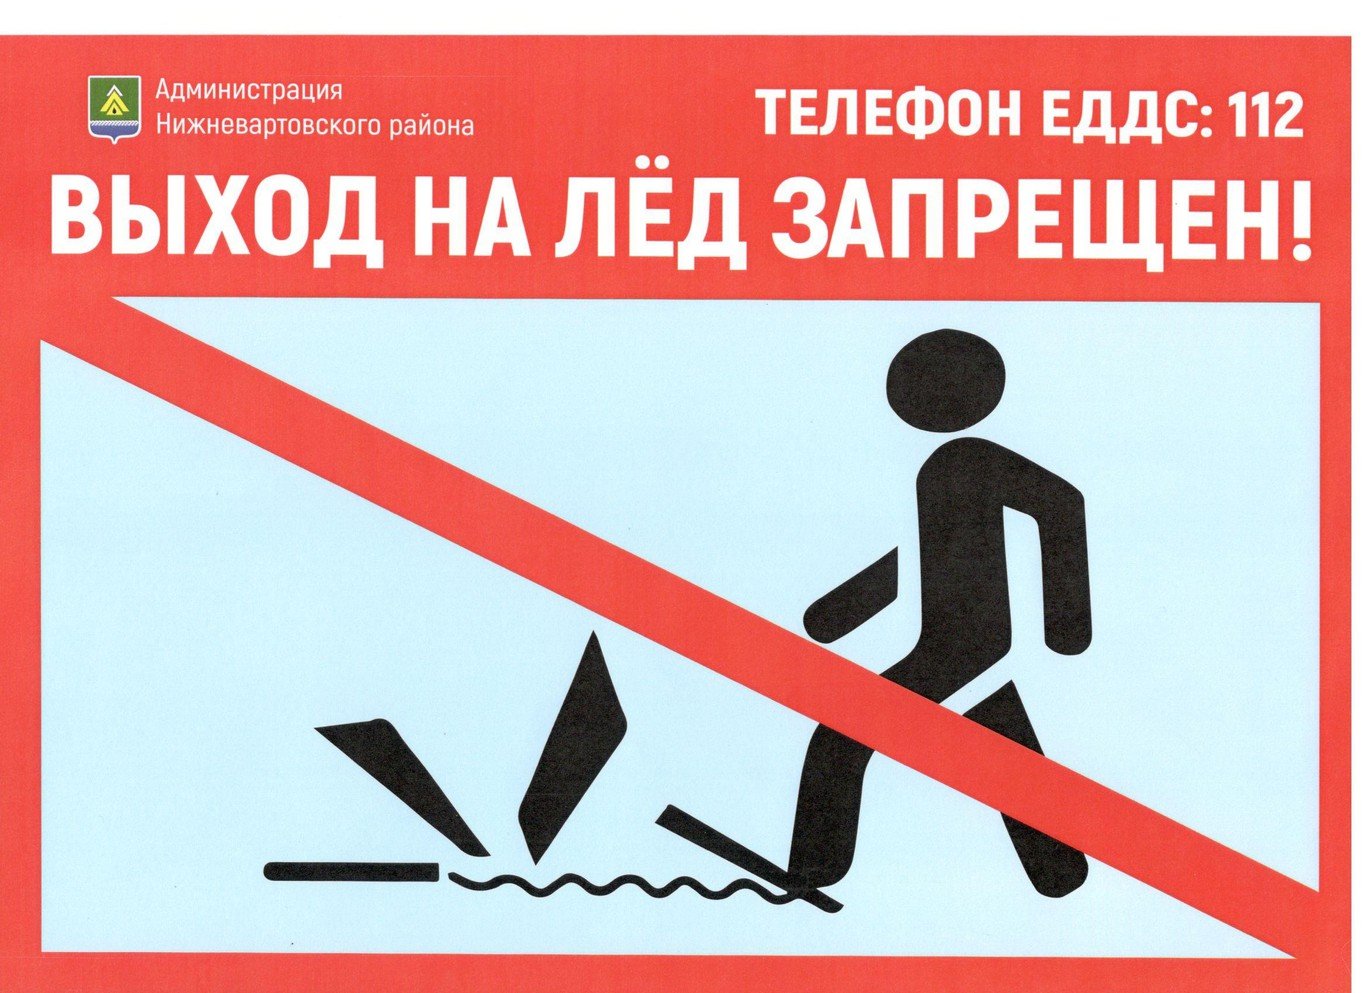 Запрещено во время игры. Выход на лед запрещен. Выход на лед запрещен табличка. Выход га лед запрещён. Таблички о запрете выхода на лед.